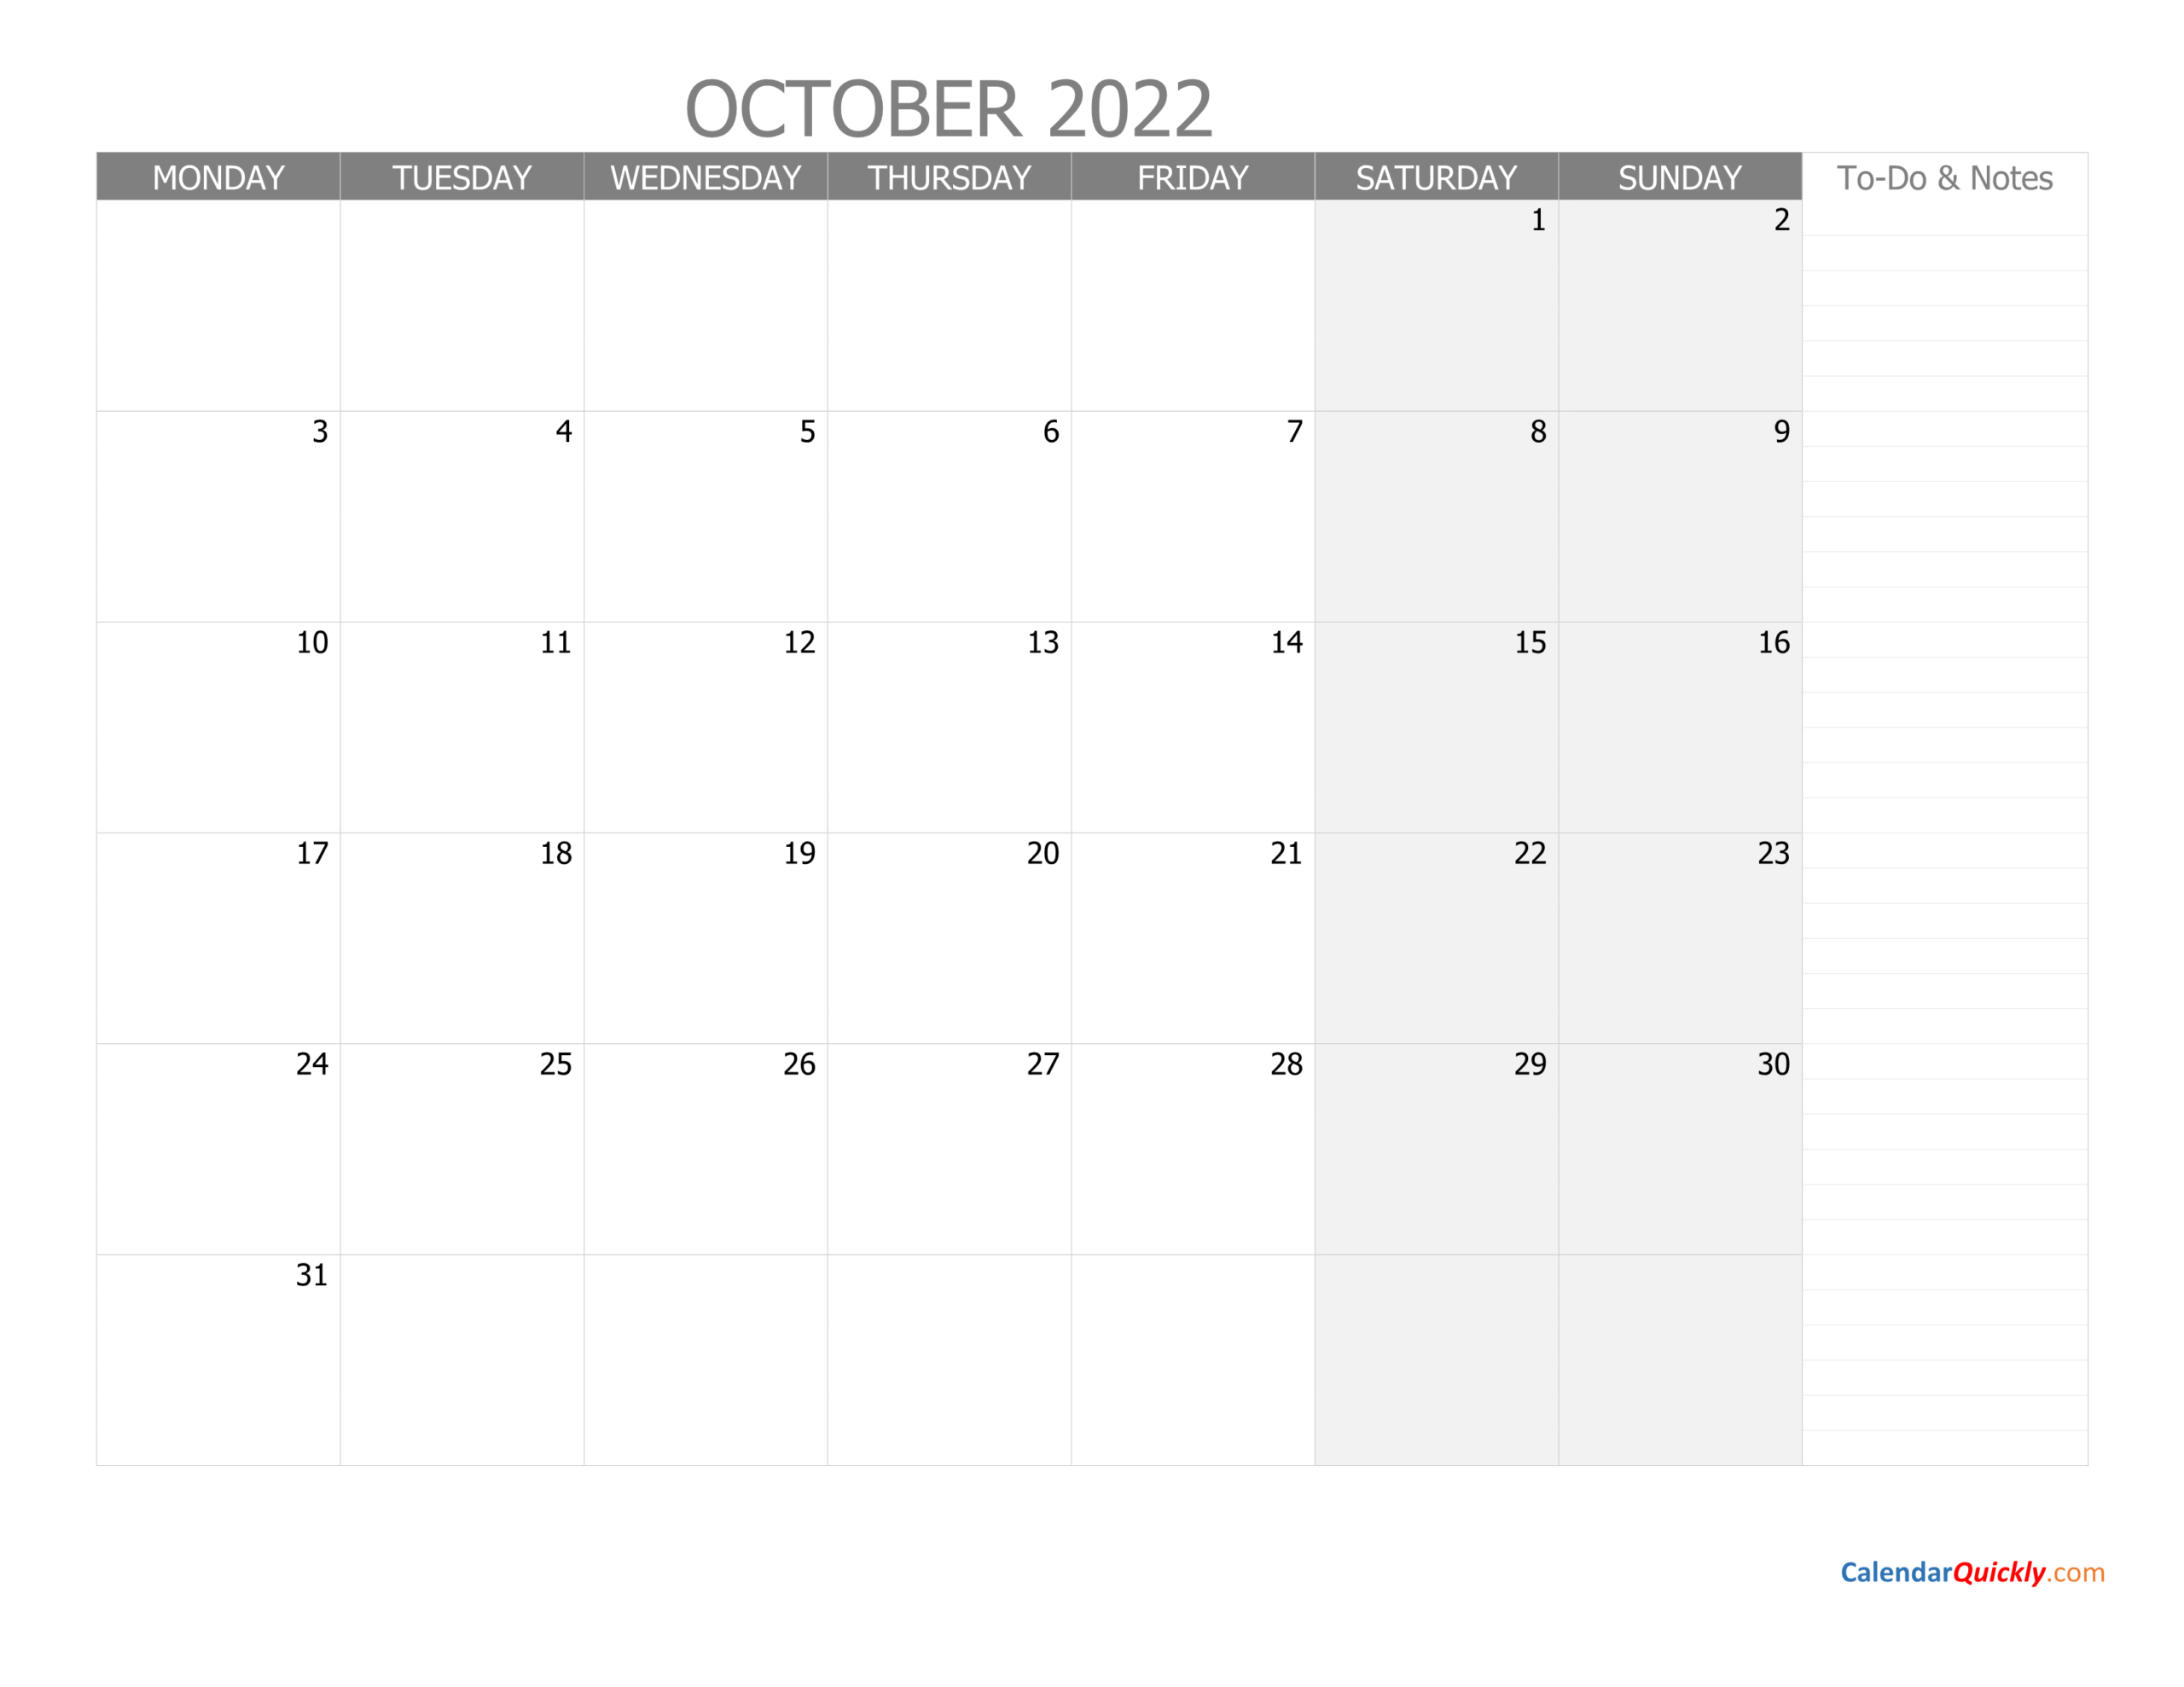 October Monday Calendar 2022 With Notes | Calendar Quickly  October 2022 To Jan 2022 Calendar